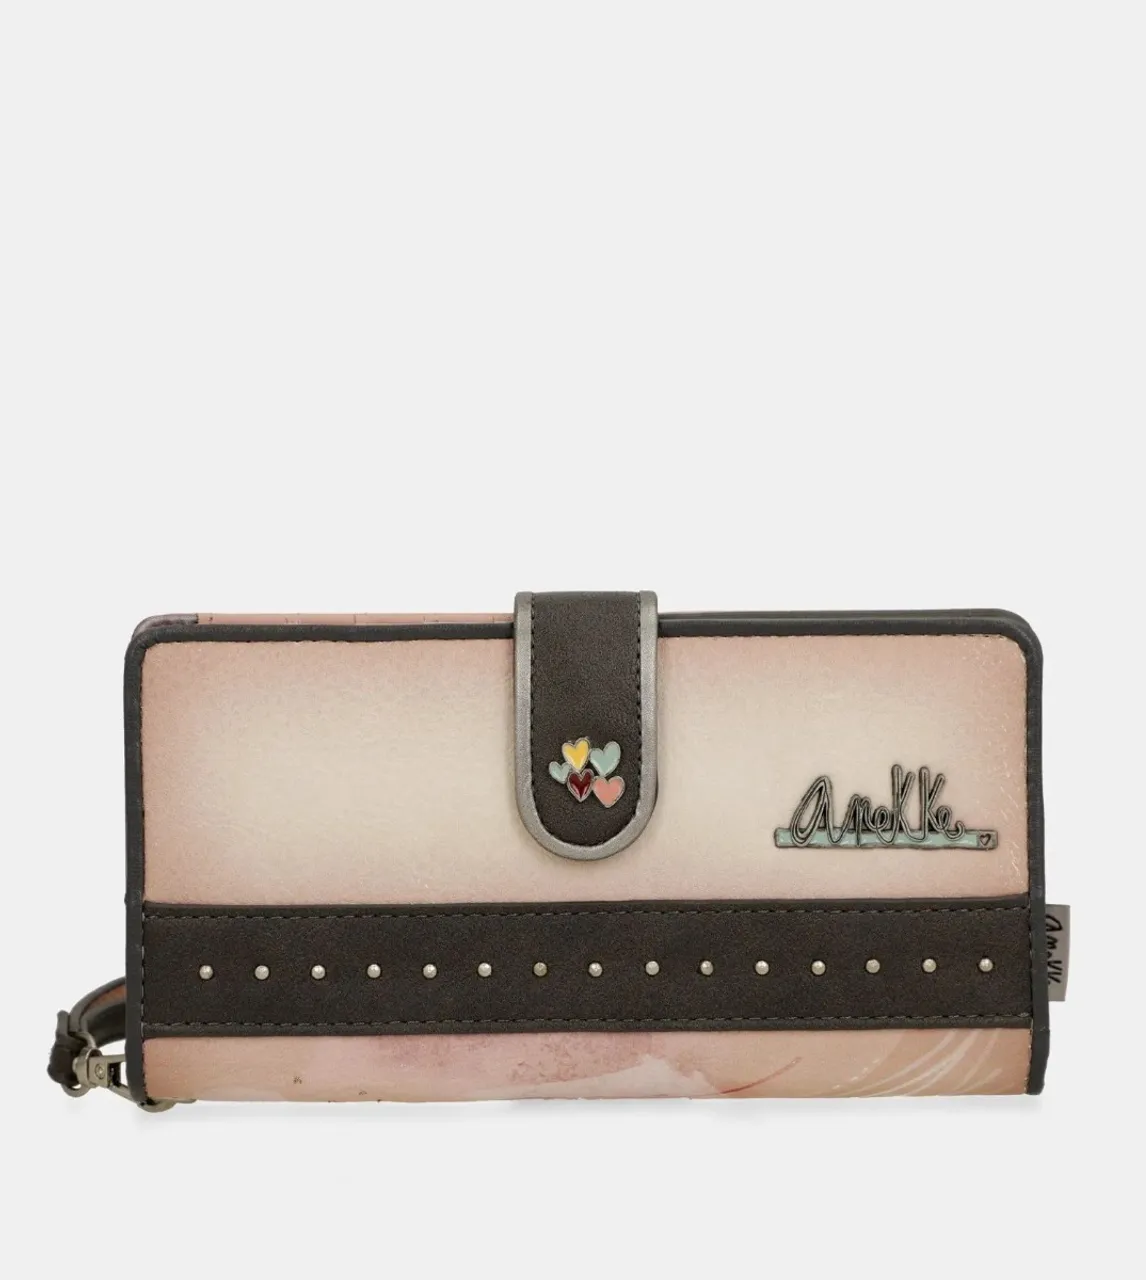 Anekke Peace & Love large RFID wallet pink